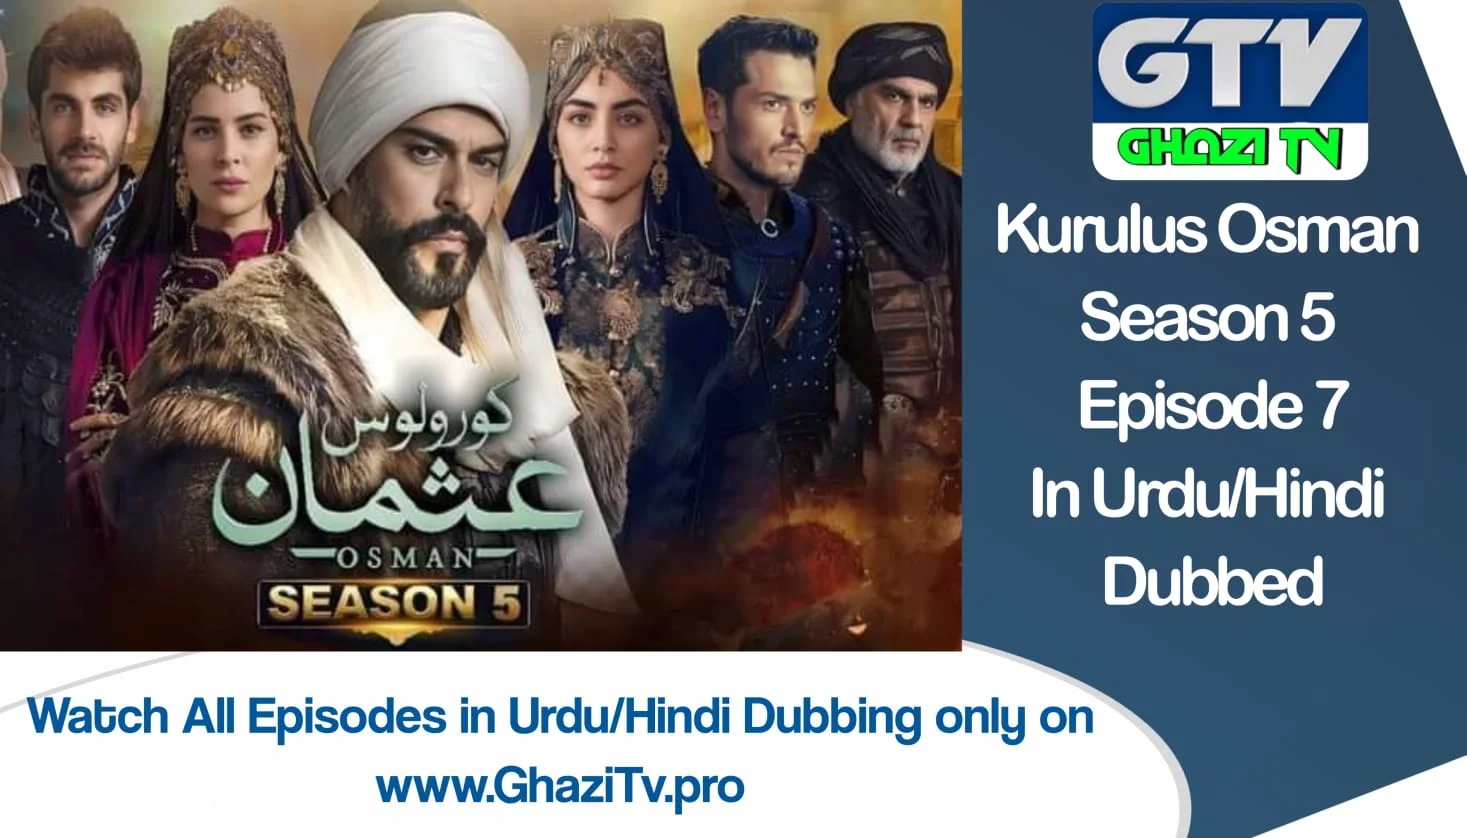 Kurulus Osman Season 5 Episode 7 in urdu dubbing